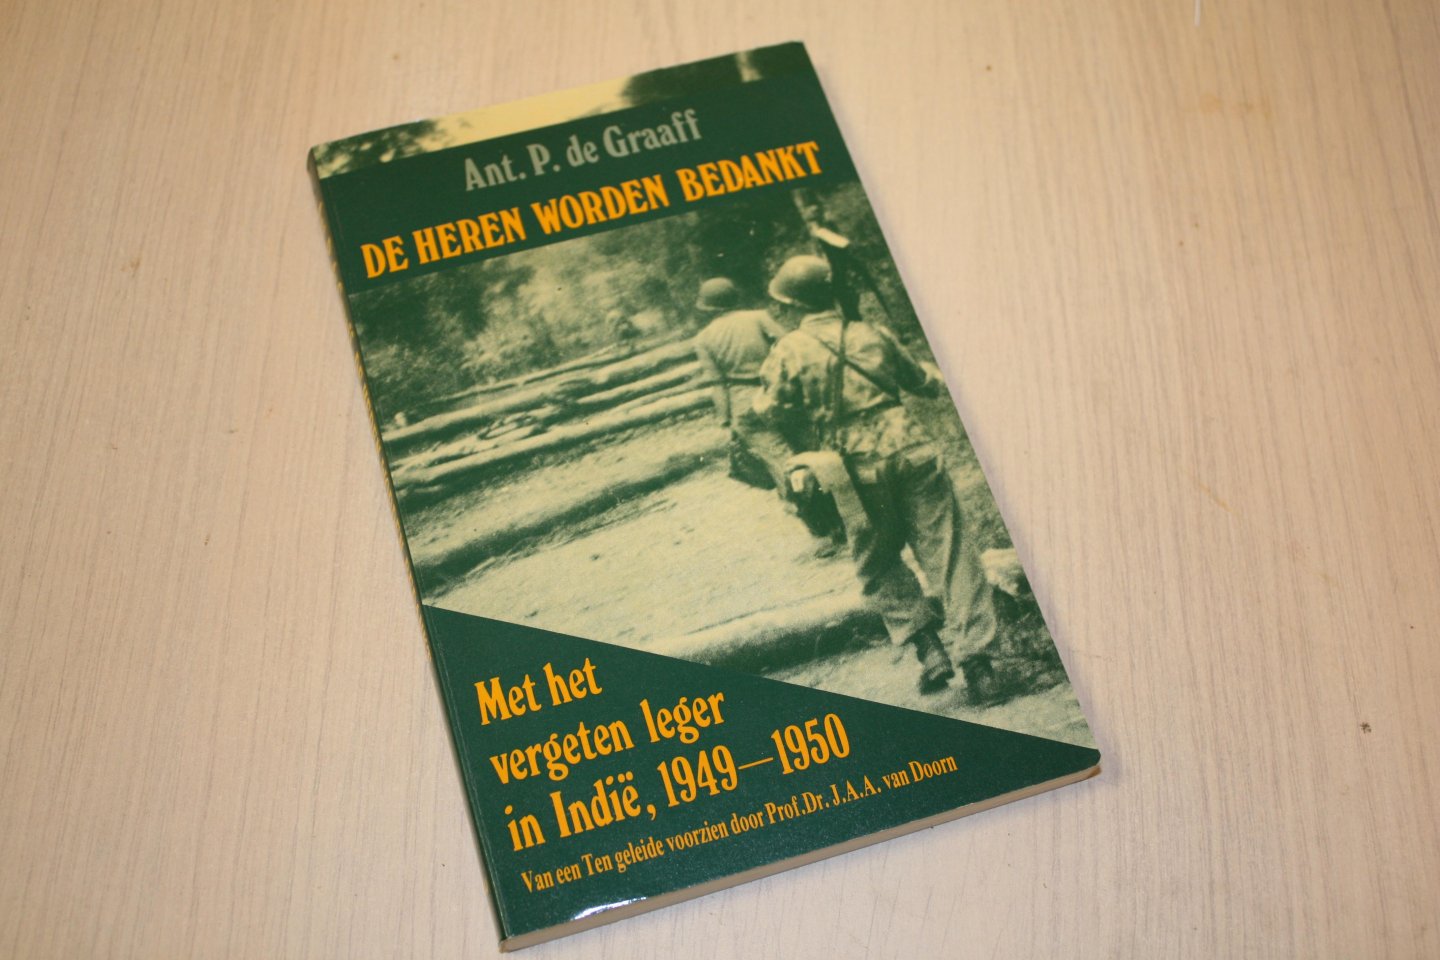 Graaff, Ant. P. de - De heren worden bedankt - Met het vergeten leger in Indë 1949-1950